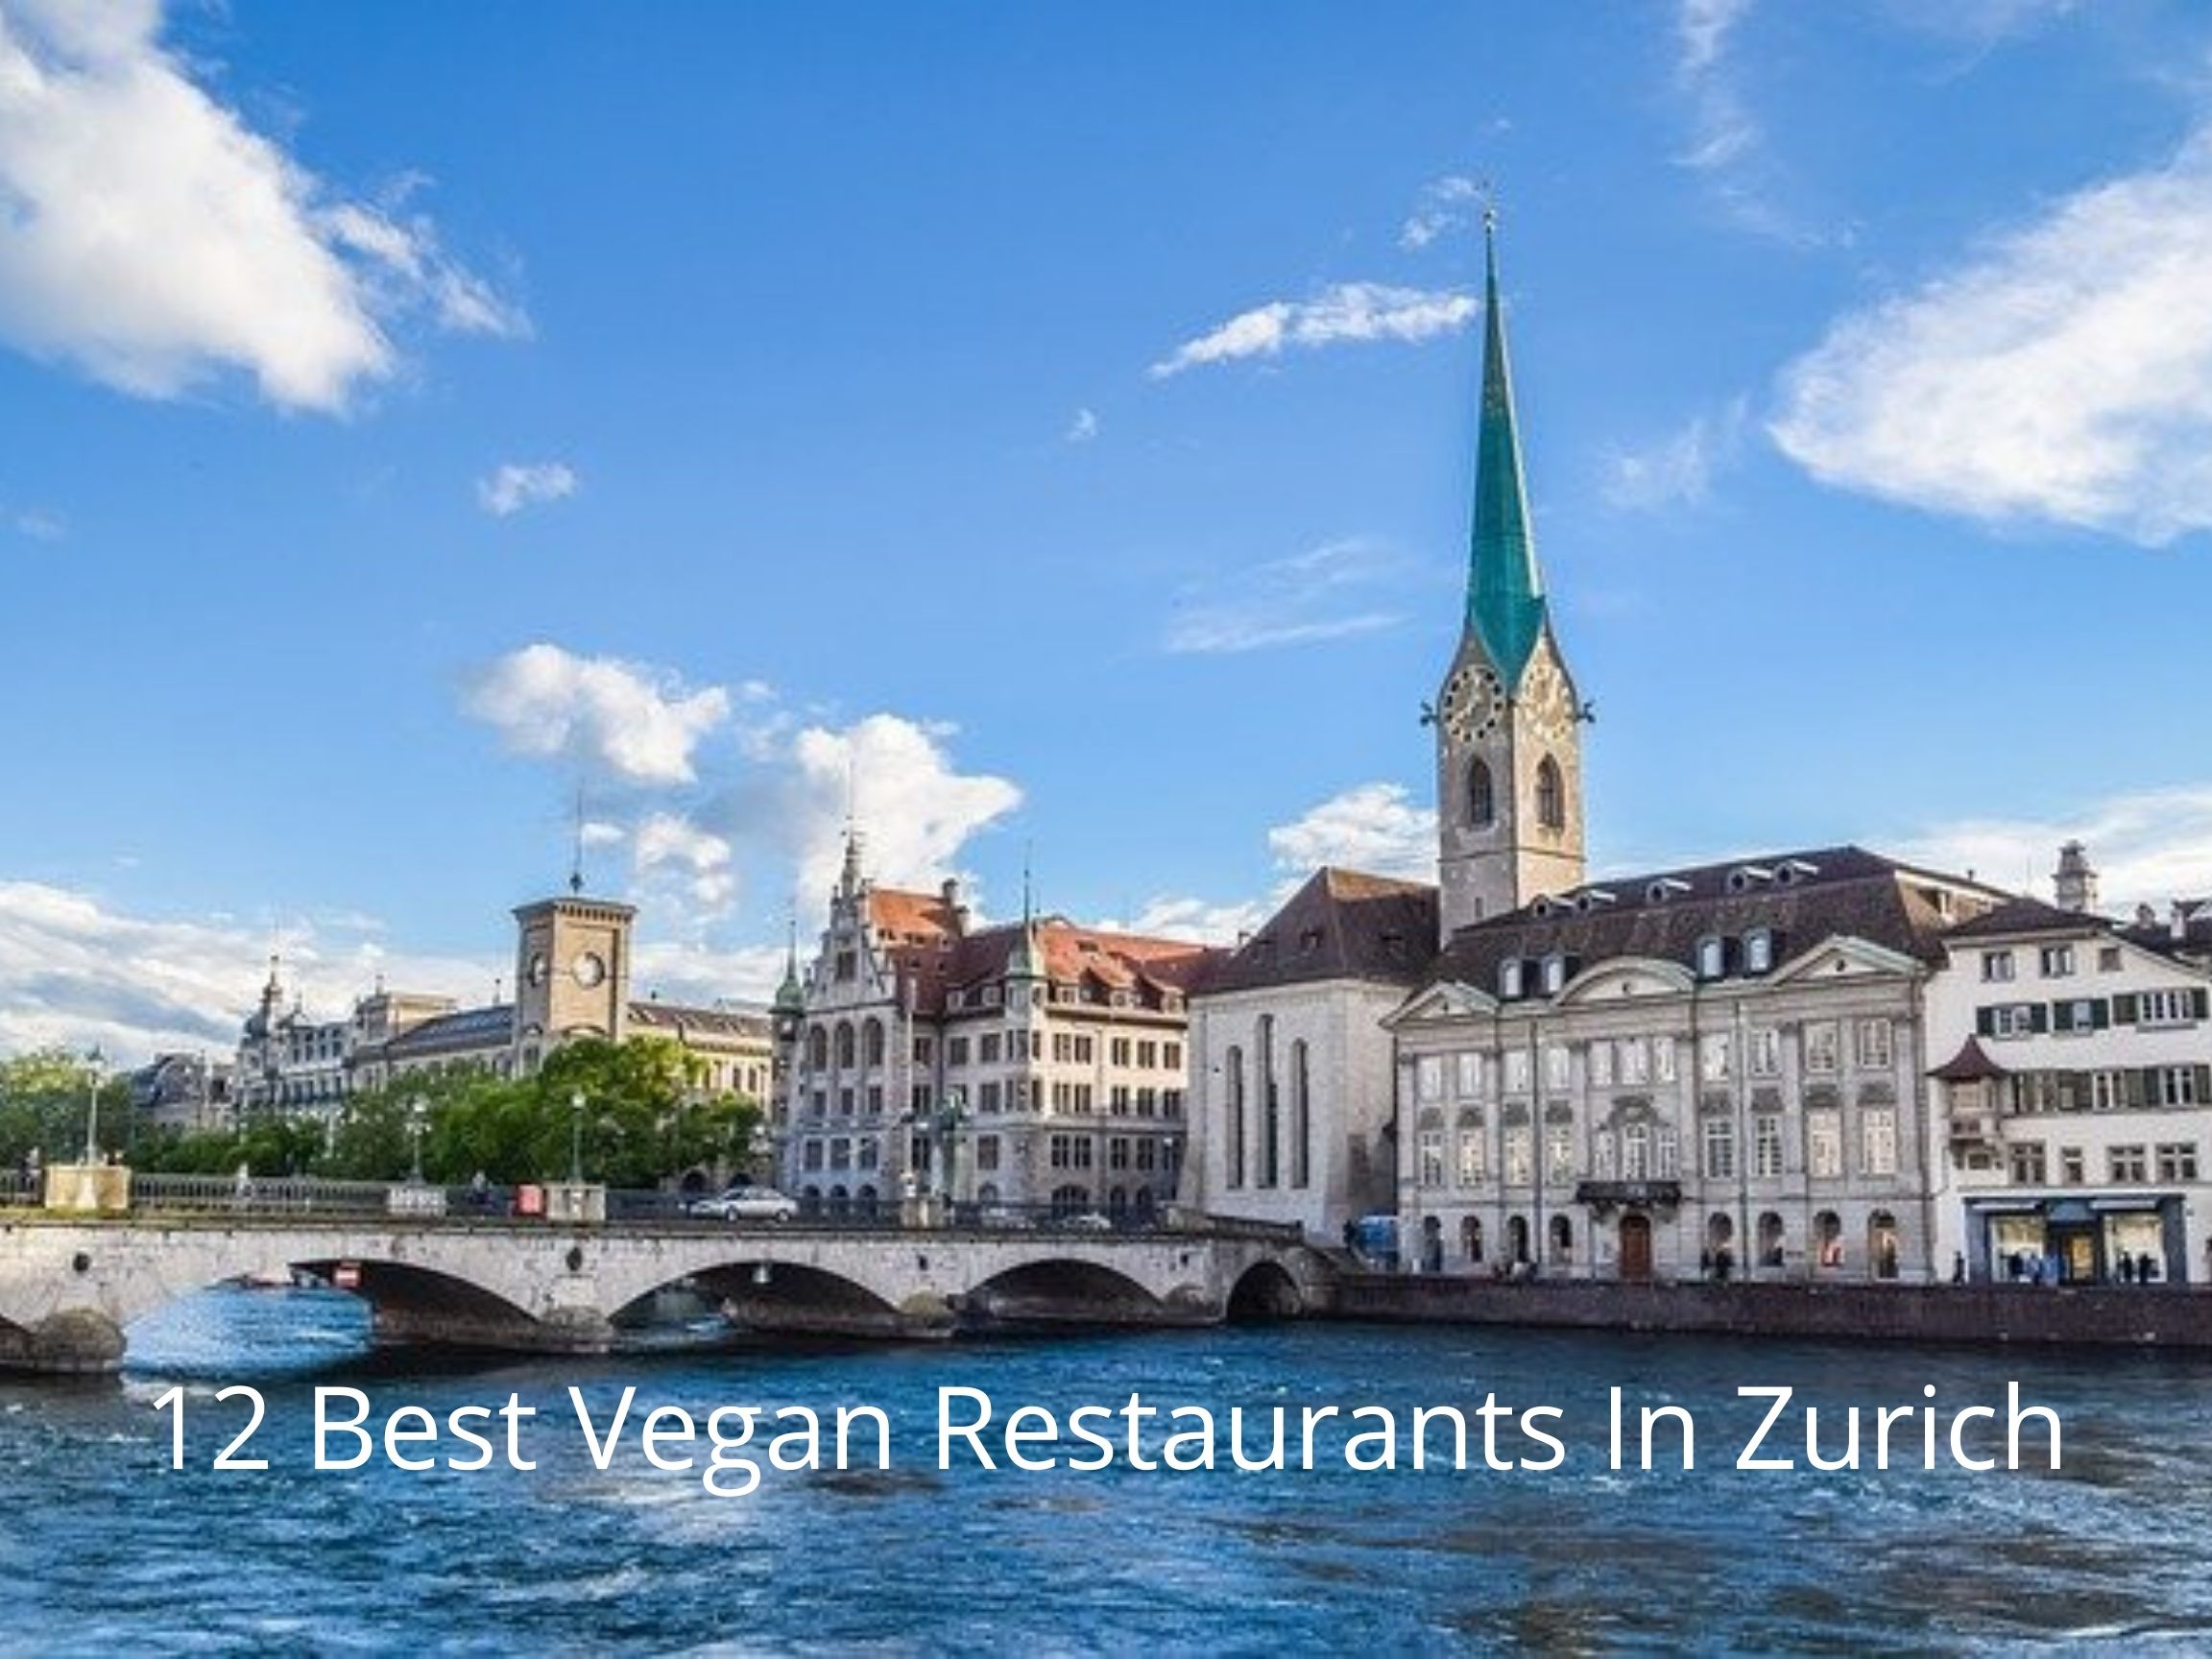 12 Best Vegan Restaurants In Zurich, Switzerland